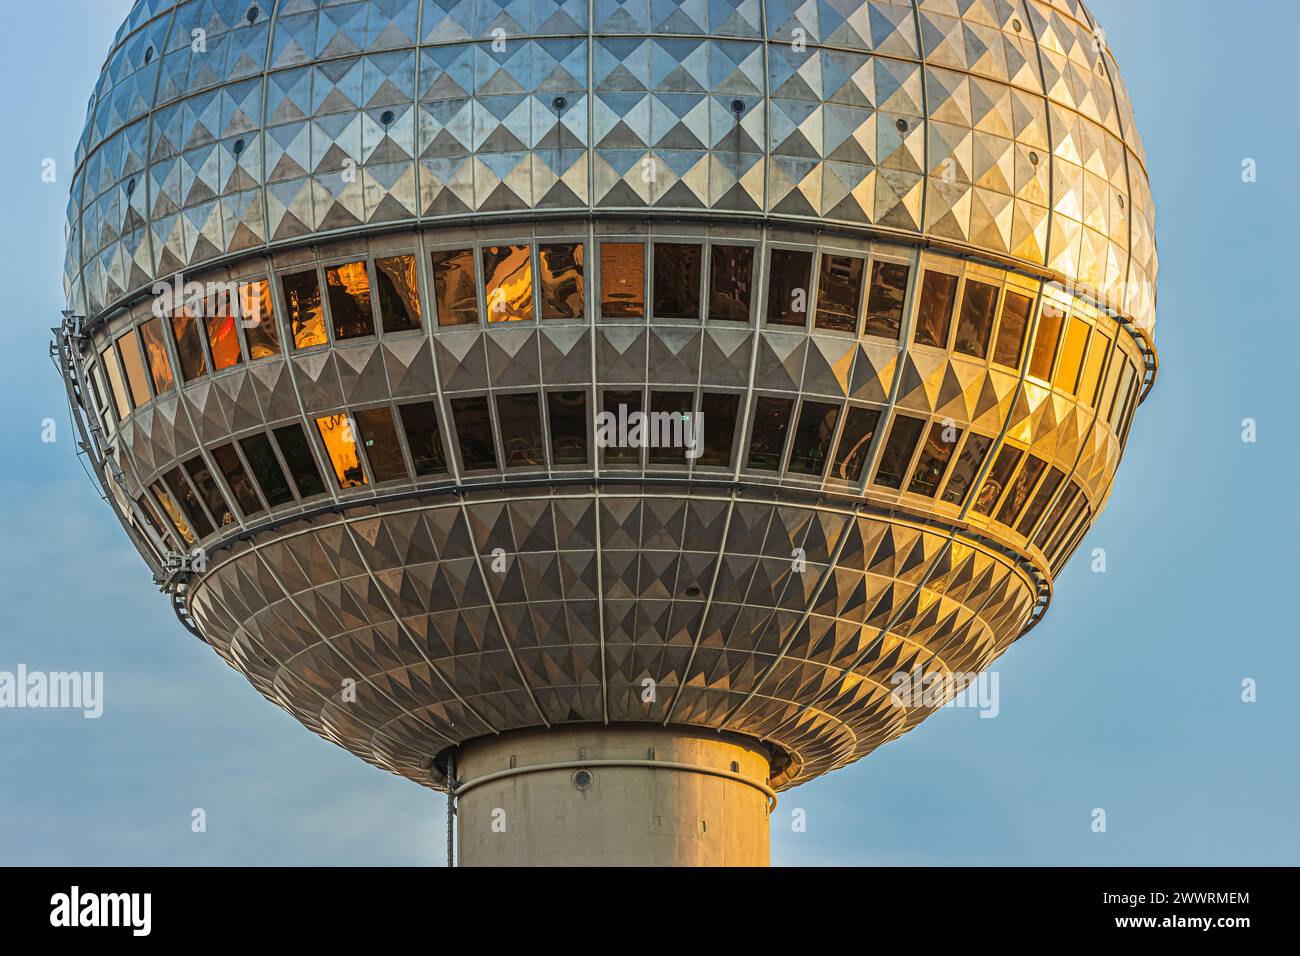 Details aus dem Berliner Fernsehturm. Sphäre des höchsten Gebäudes der Hauptstadt Deutschlands mit Reflexionen an den Fensterscheiben des Glases Stockfoto